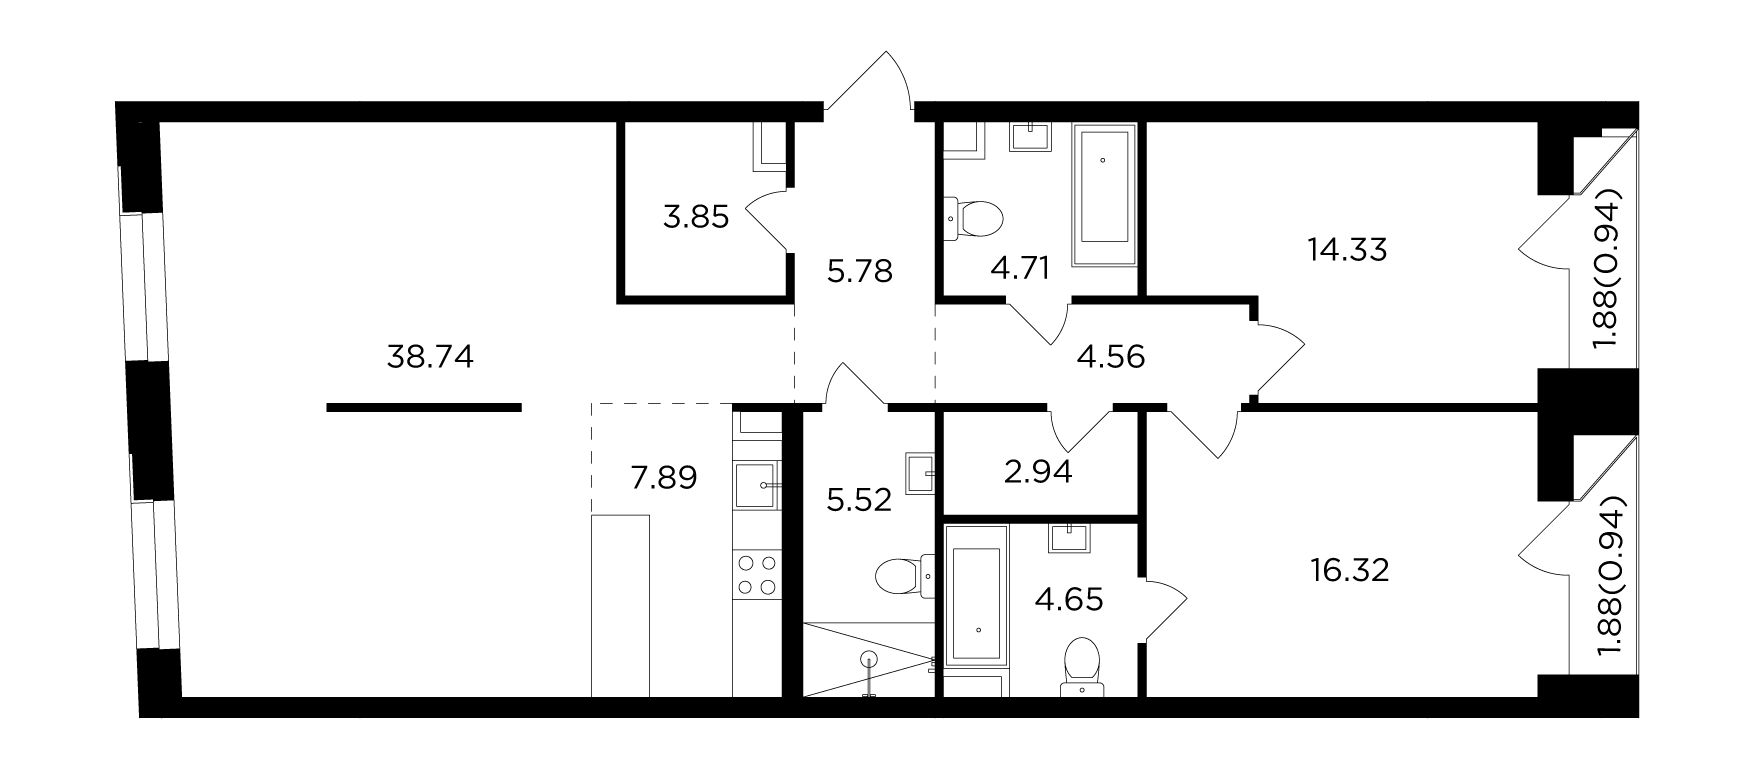 3-комнатная 111.42 м²